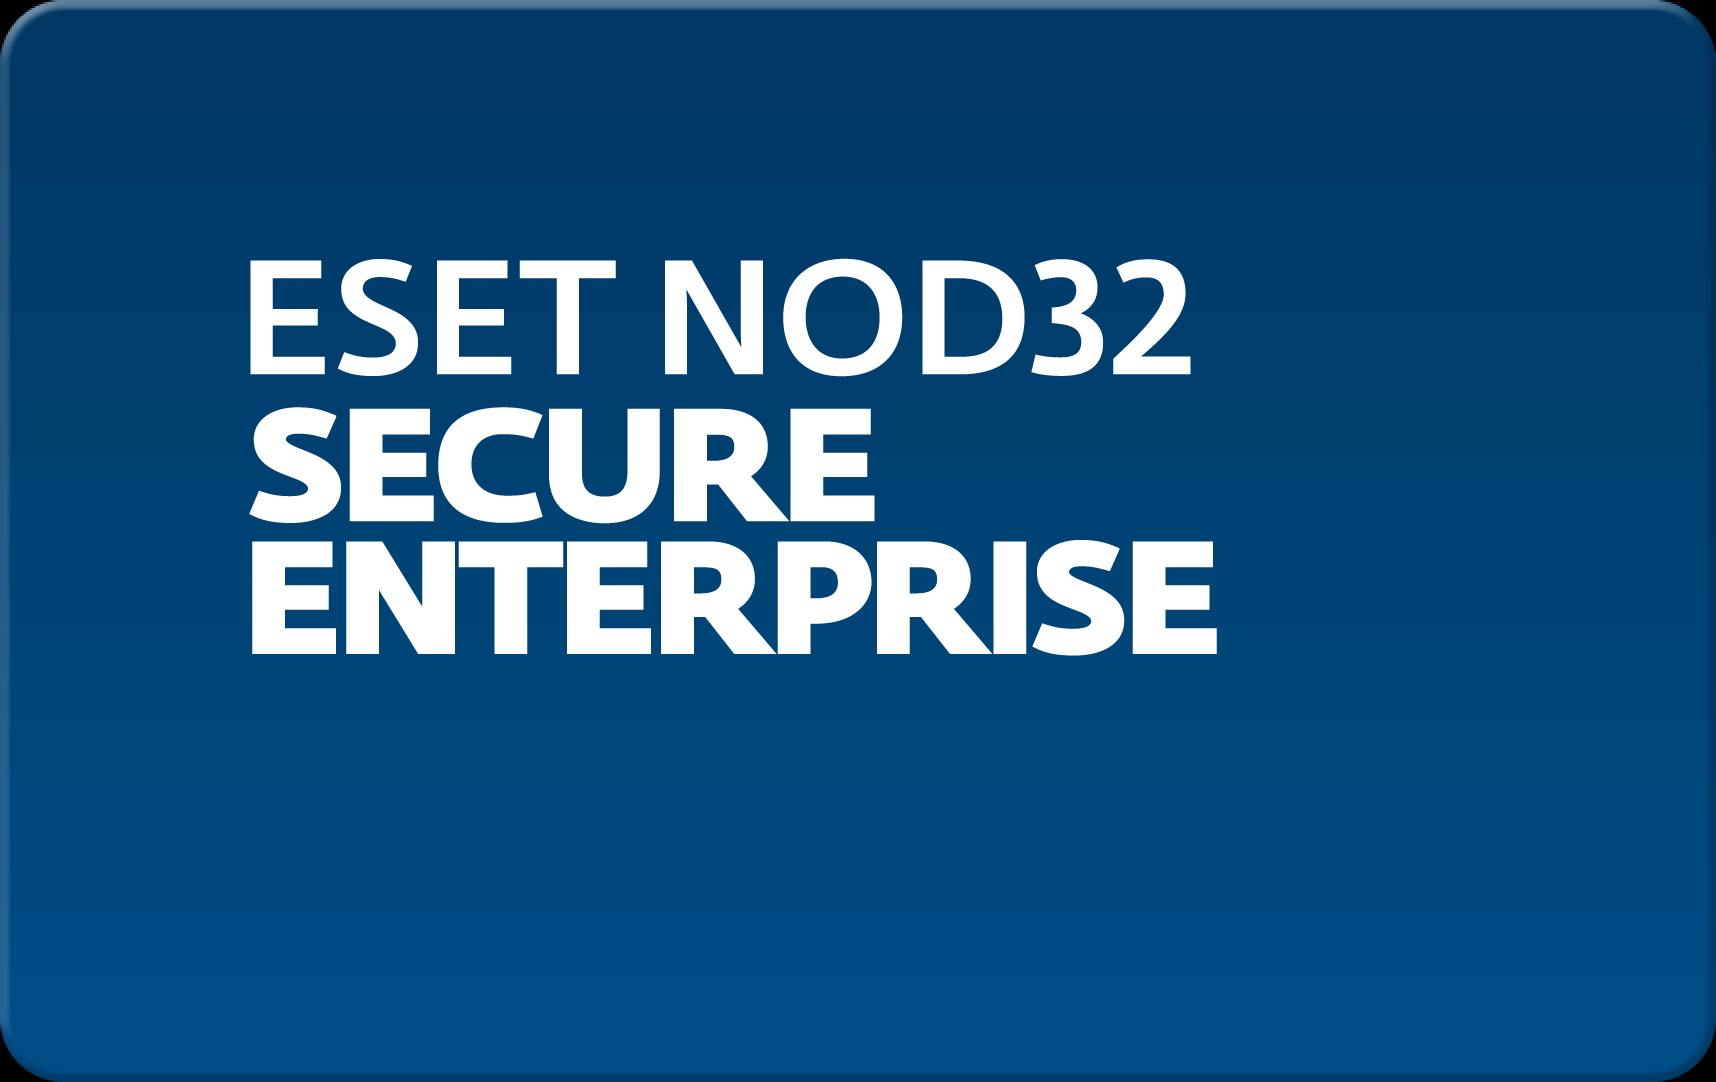        Eset NOD32 Secure Enterprise  170 